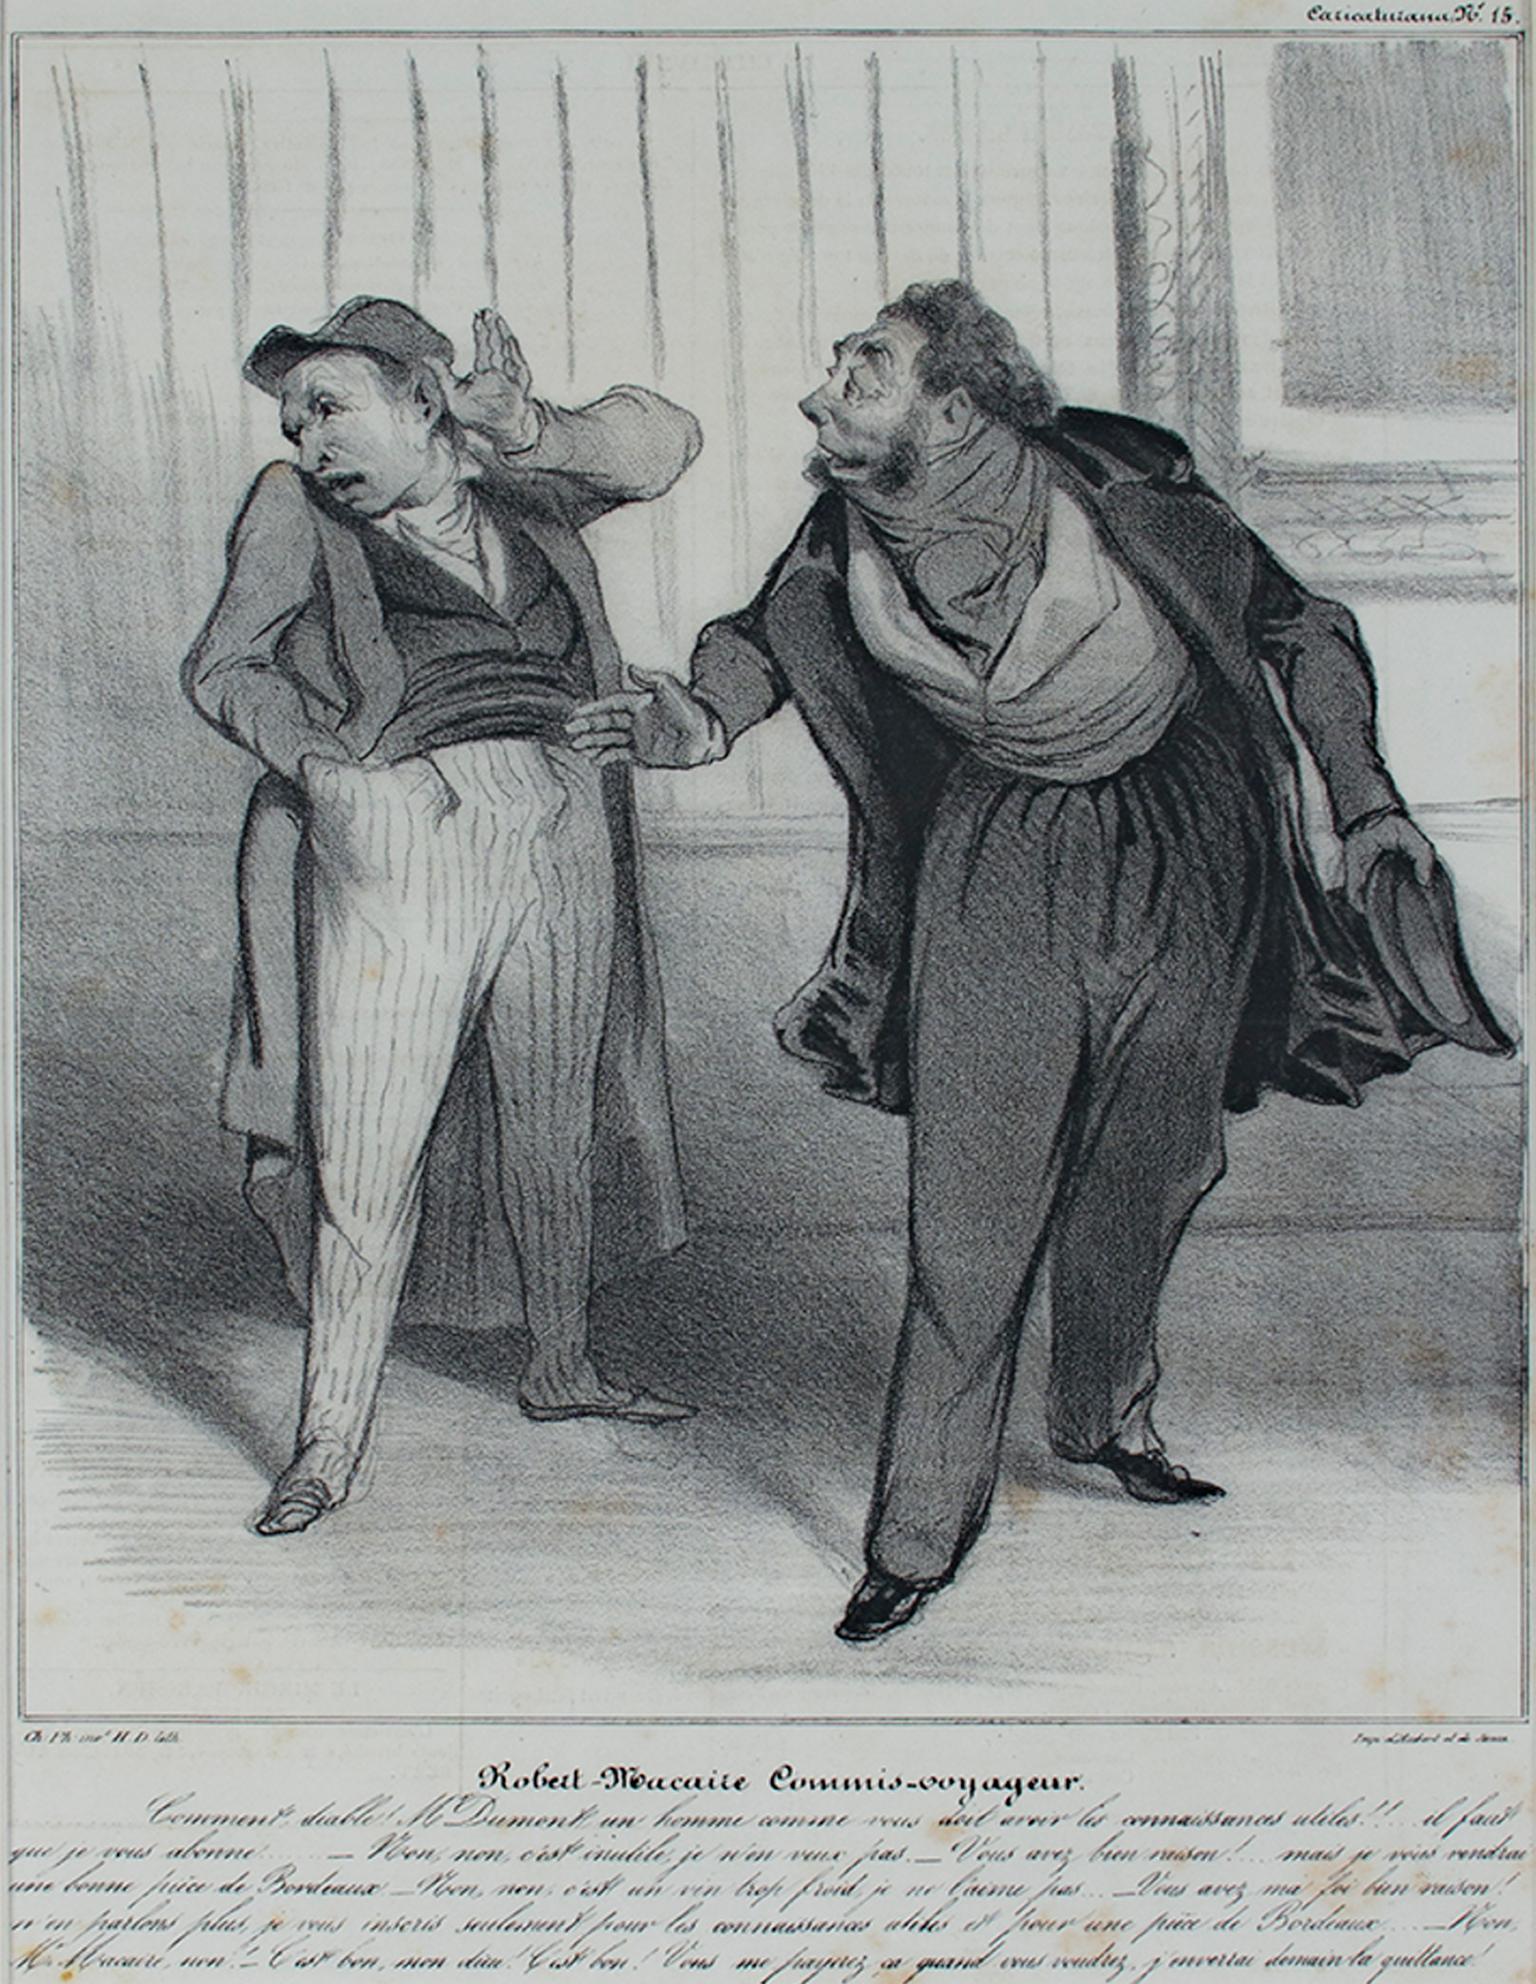 Honoré Daumier Print - "Robert Macaire Commis Voyageur, " Original Lithograph by Honore Daumier